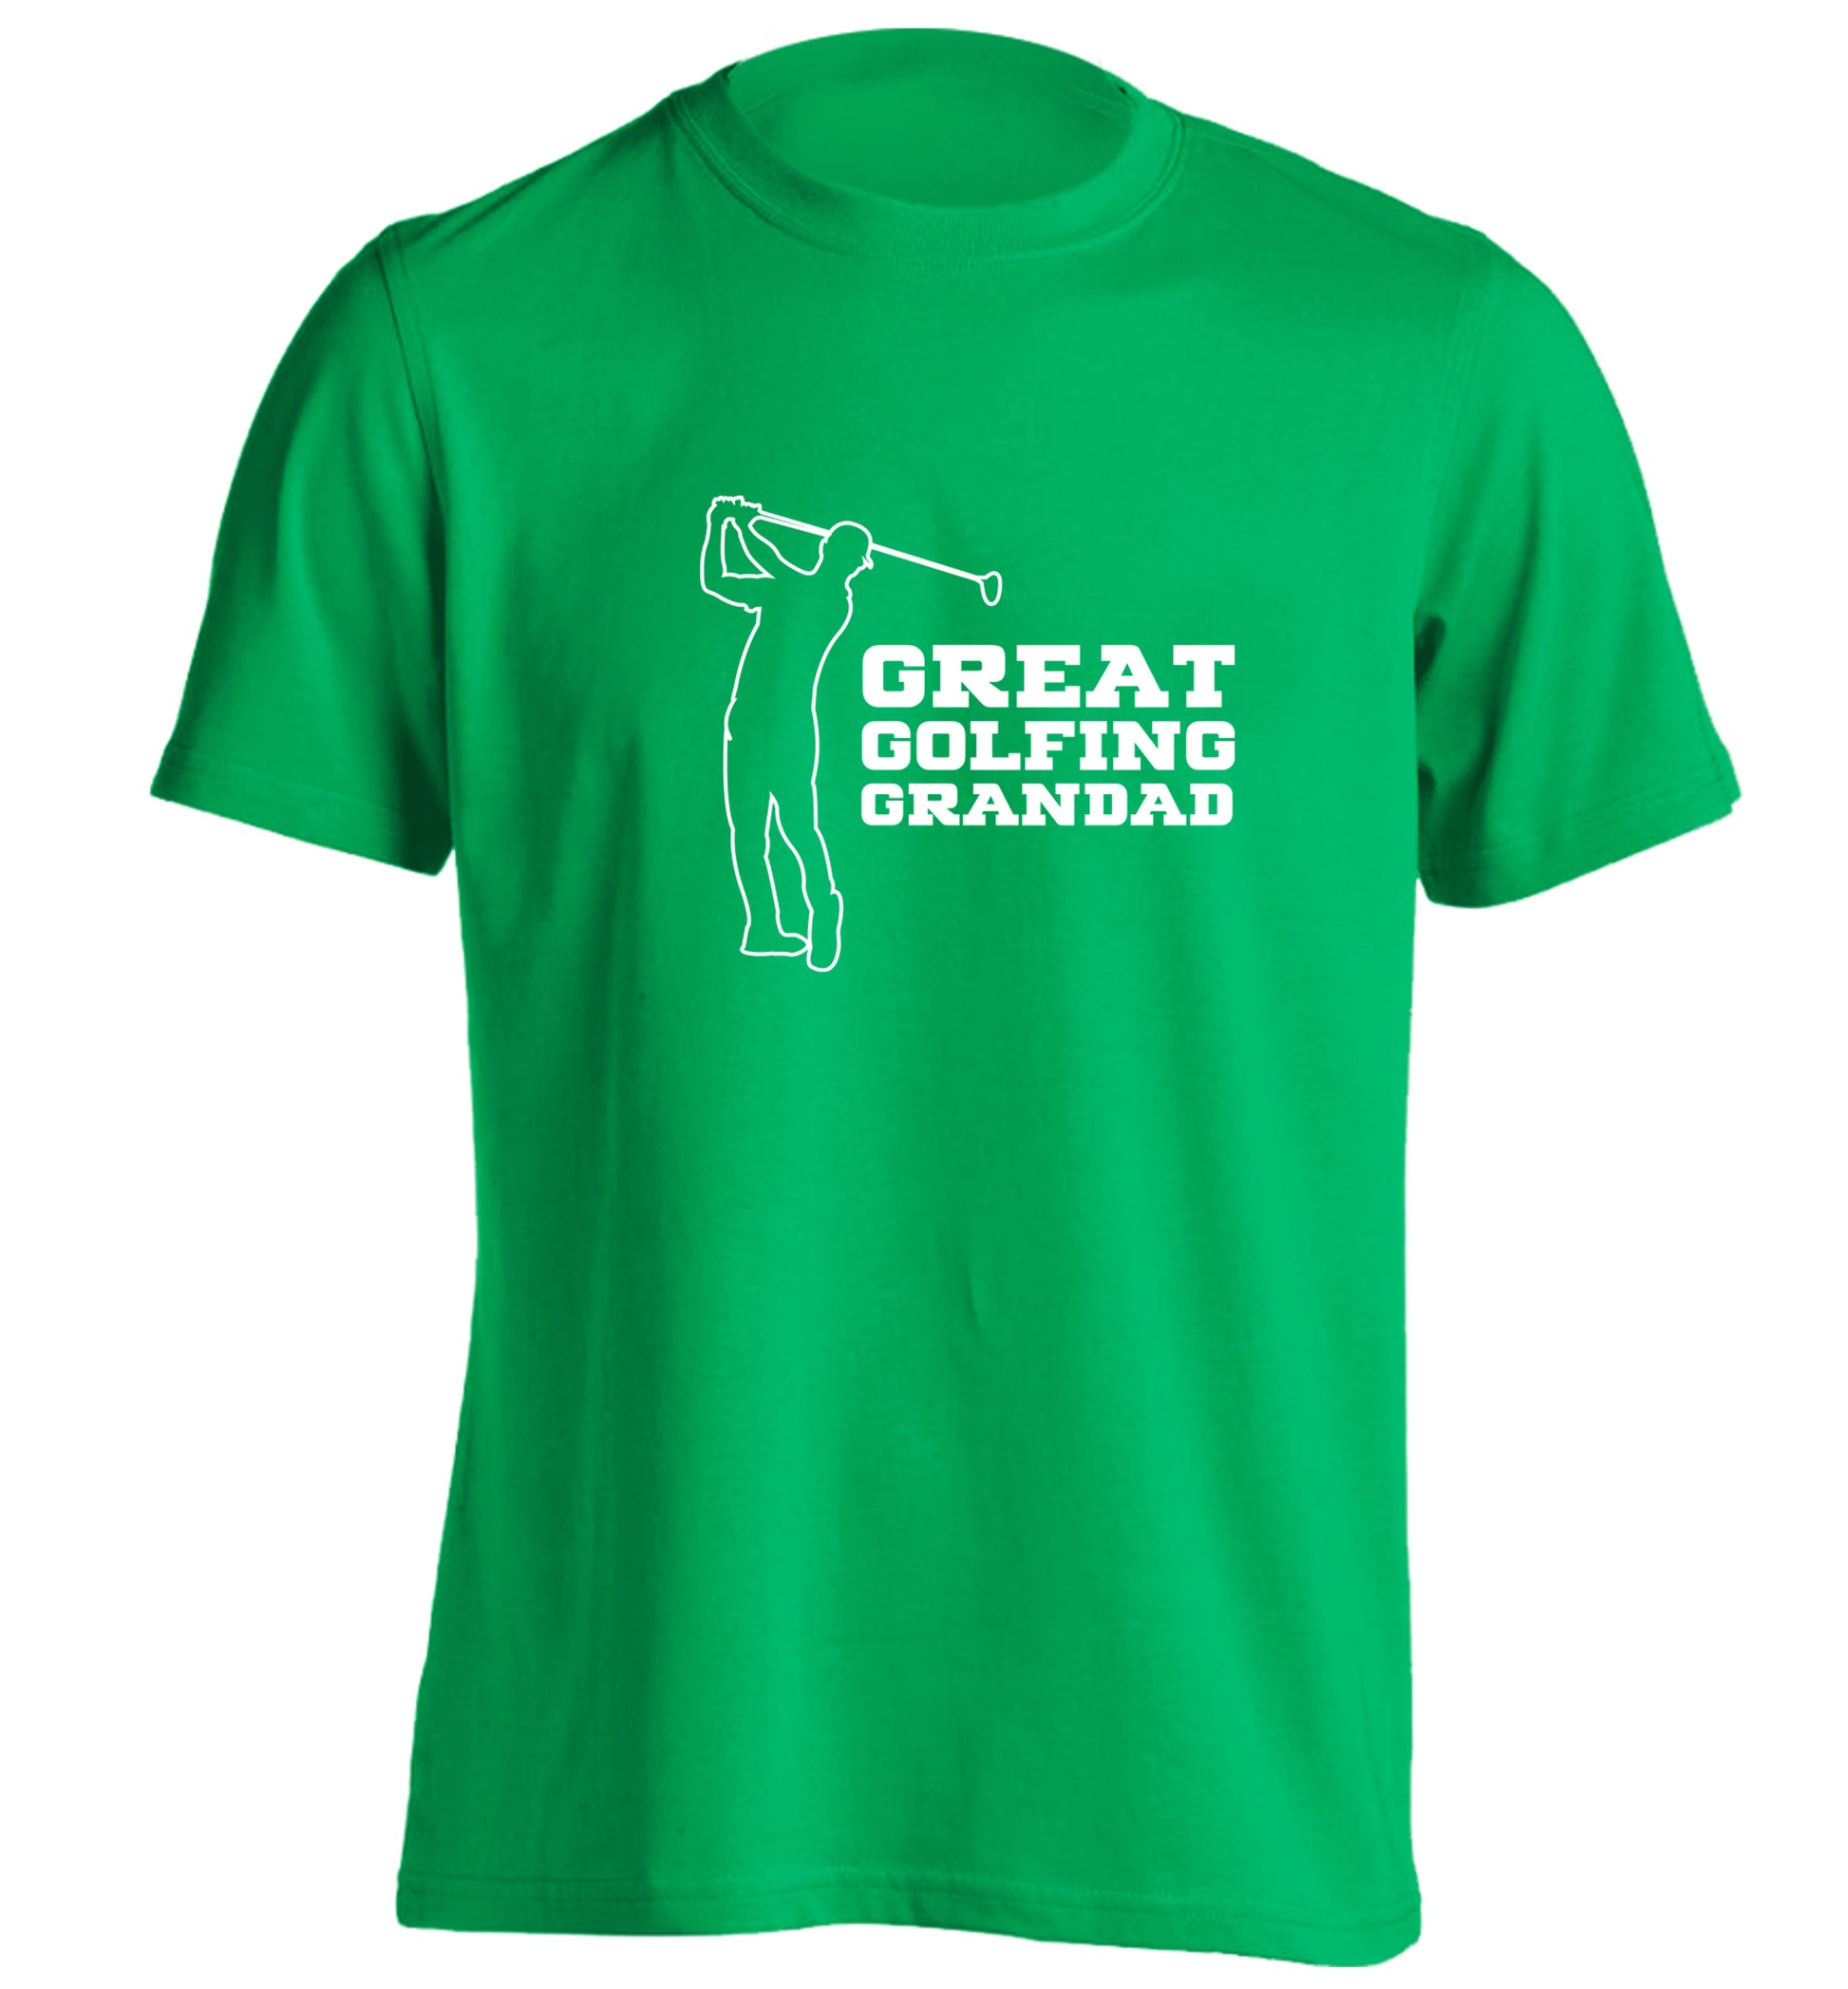 Great Golfing Grandad adults unisex green Tshirt 2XL